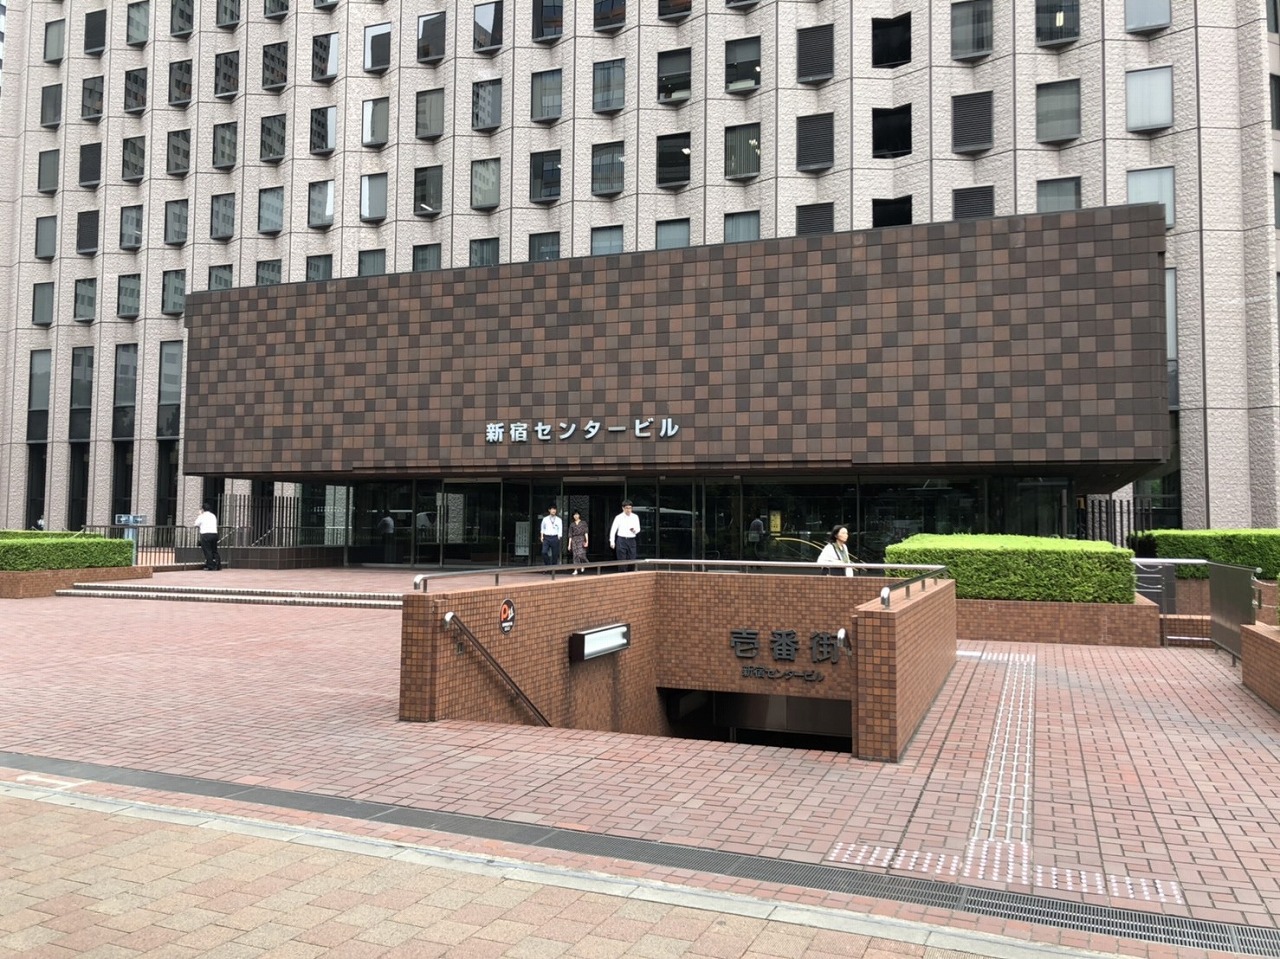 Exterior_The entrance area of the Shinjuku Center Building.